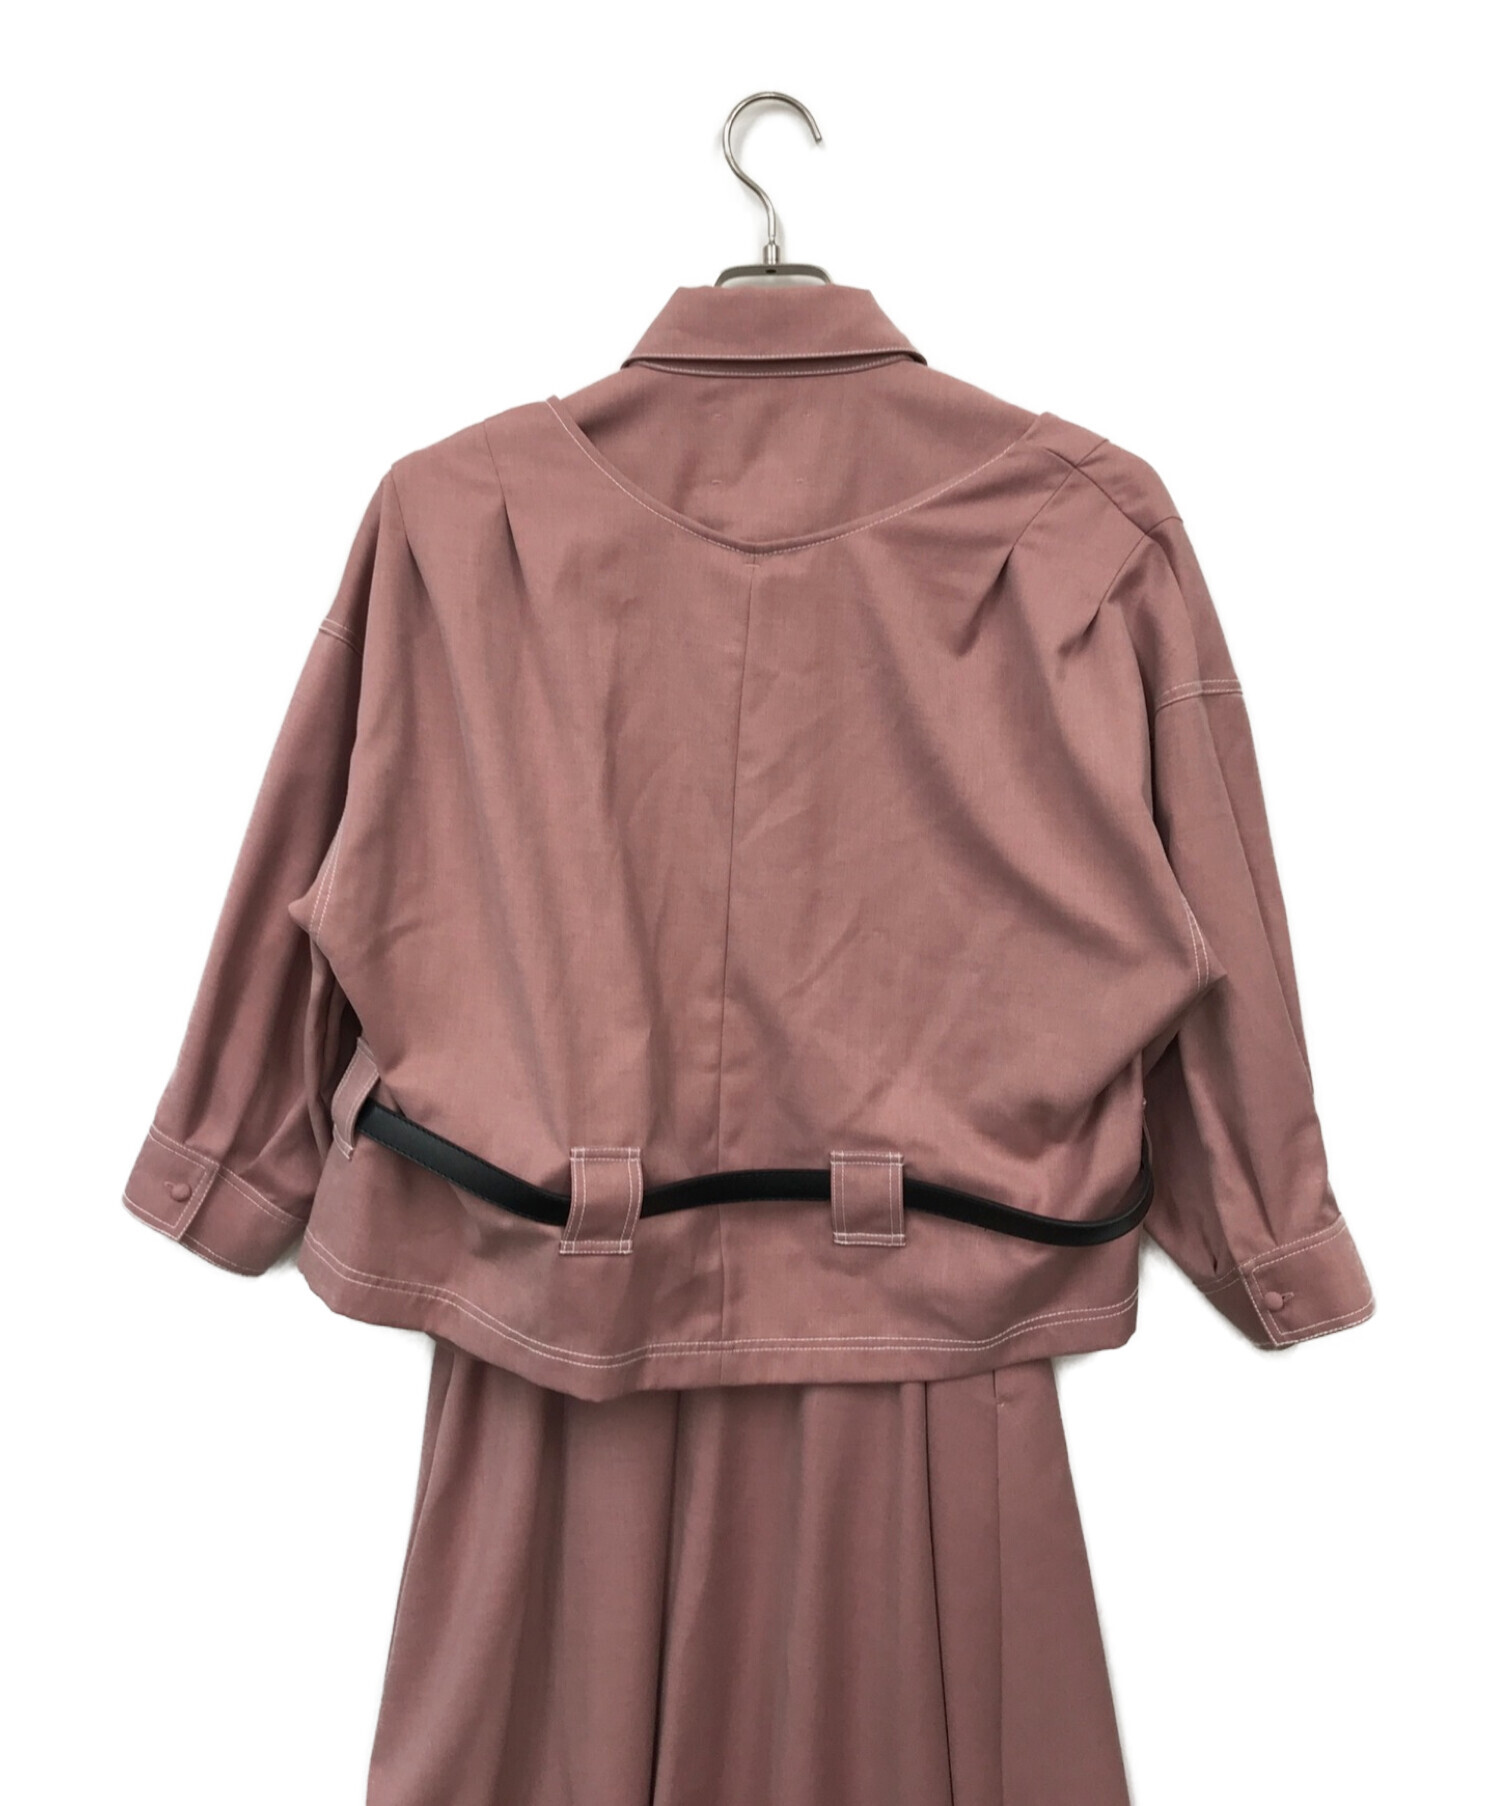 Ameri (アメリ) GENTLEWOMAN OVERLAP DRESS( ジェントルウーマンオーバーラップドレス) ピンク サイズ:S